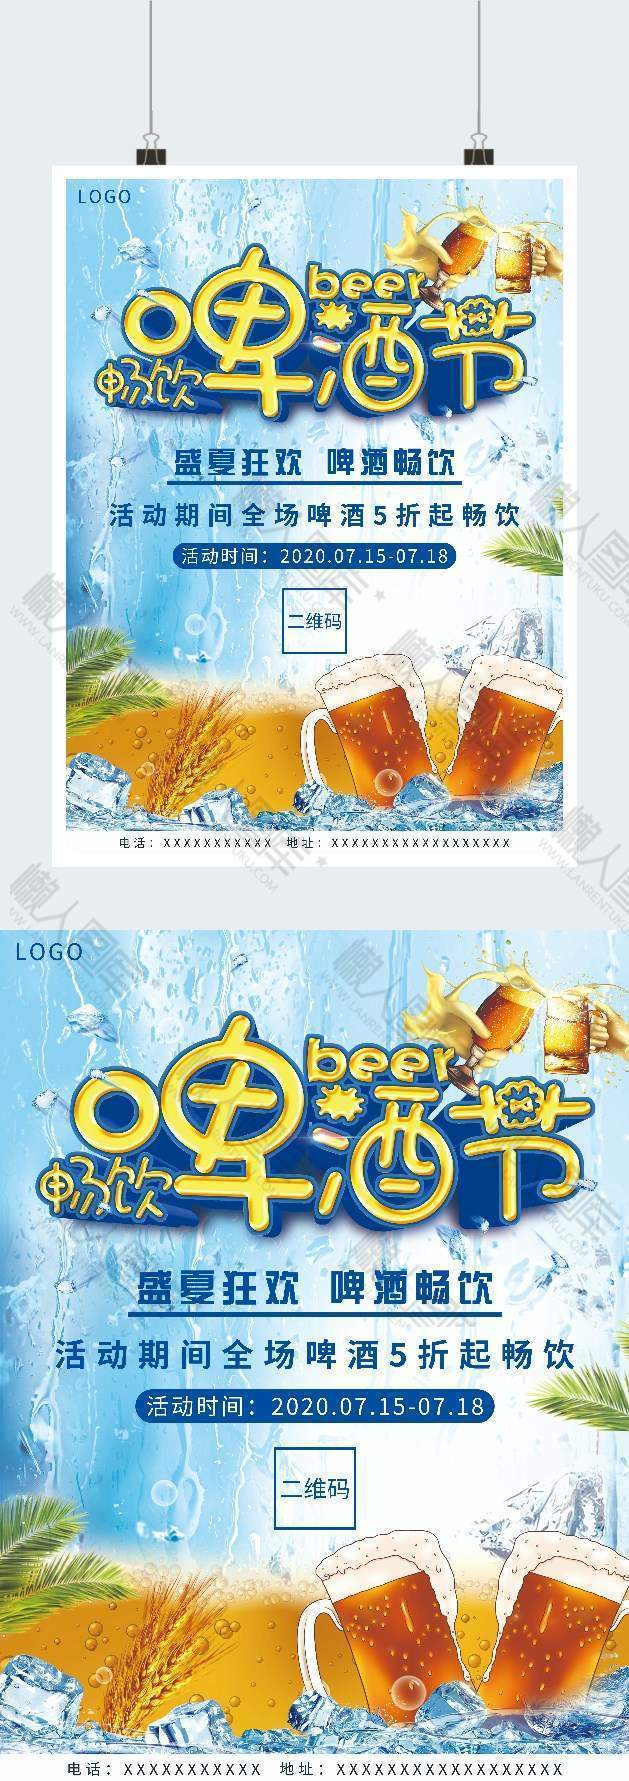 冰爽畅饮啤酒节促销广告平面海报